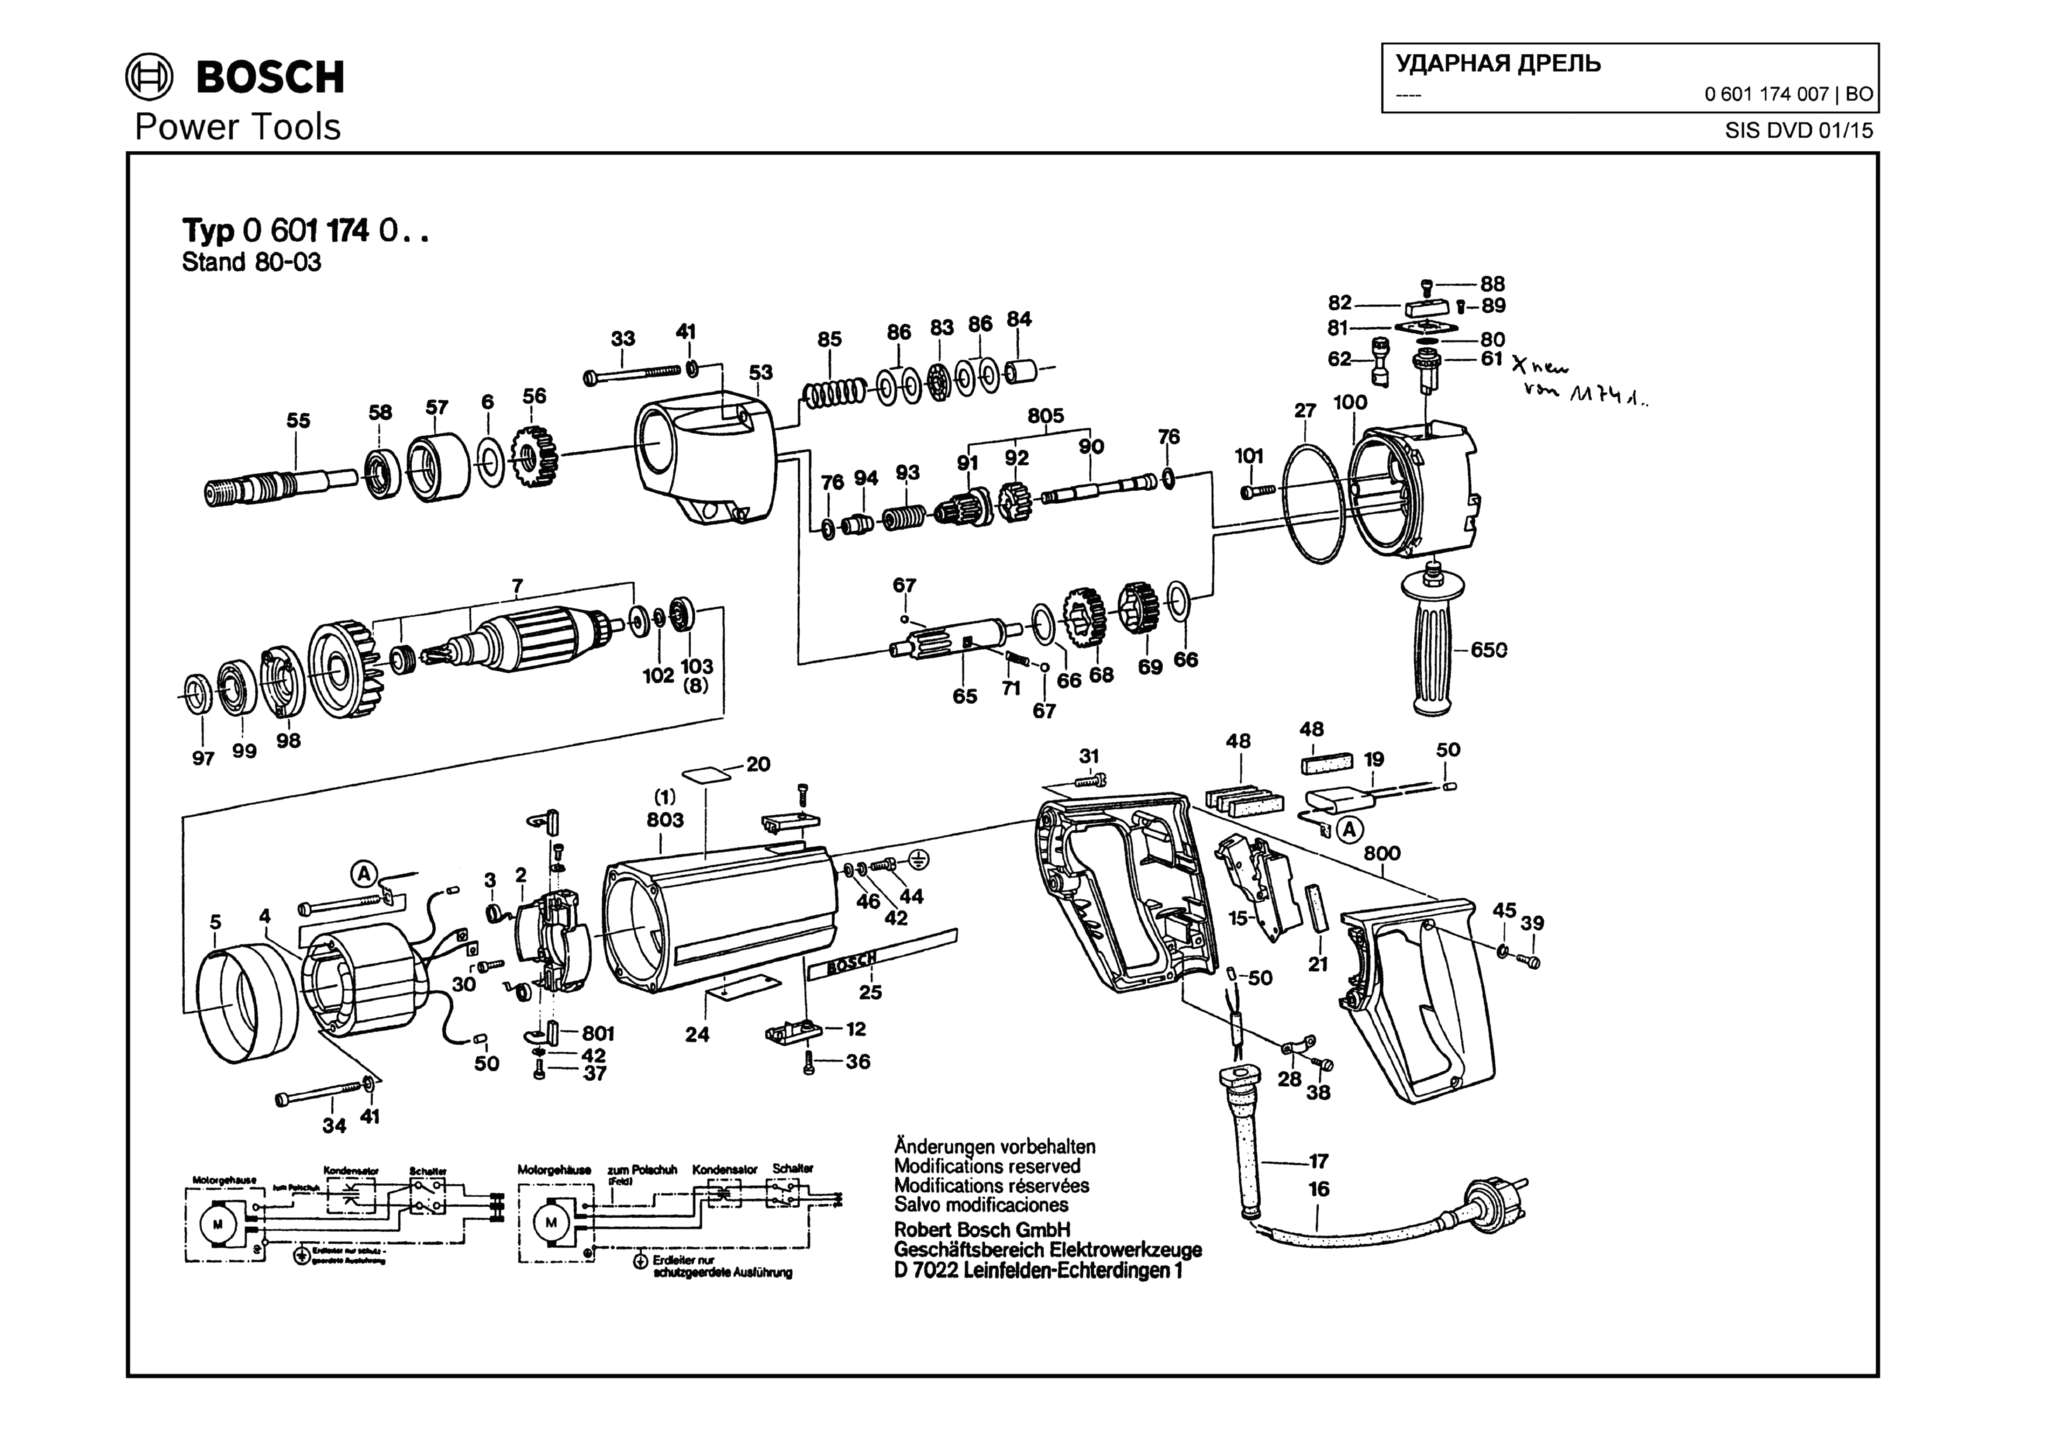 Запчасти, схема и деталировка Bosch (ТИП 0601174007)